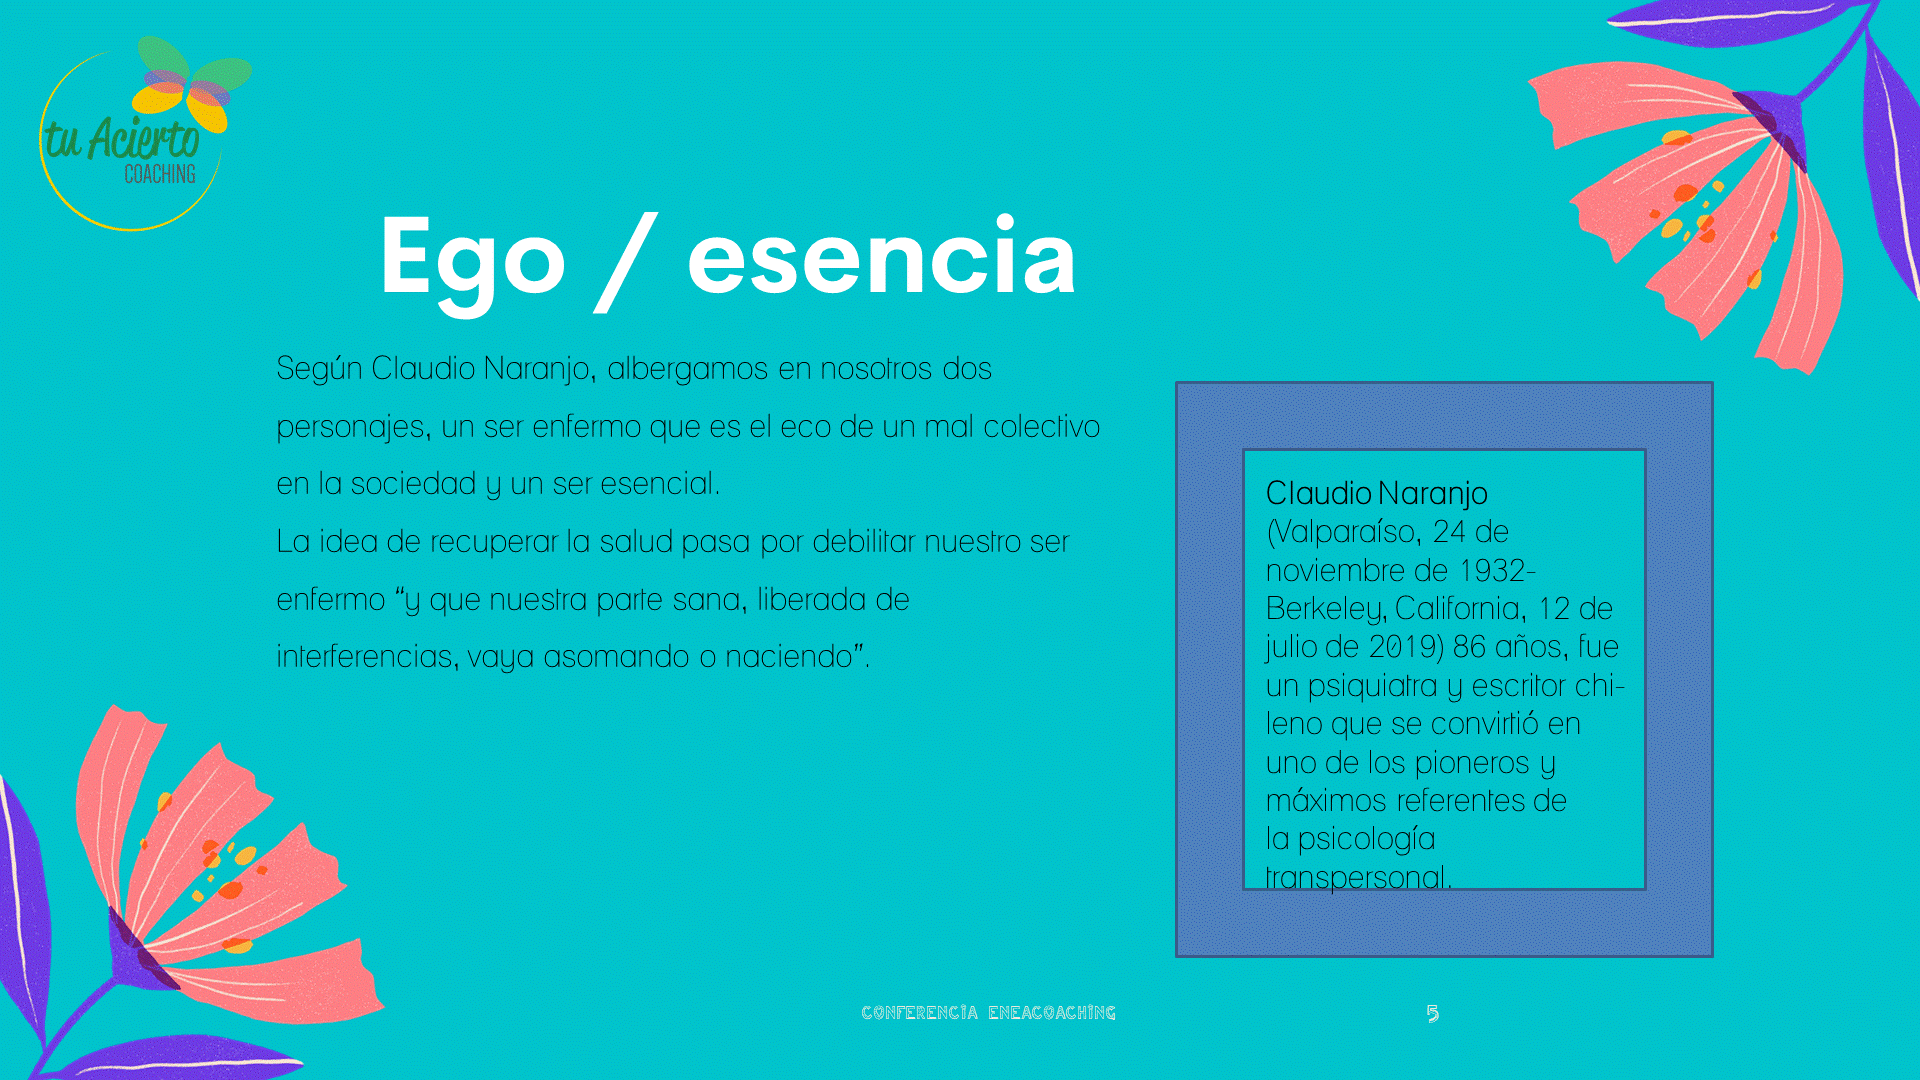 Ego/esencia